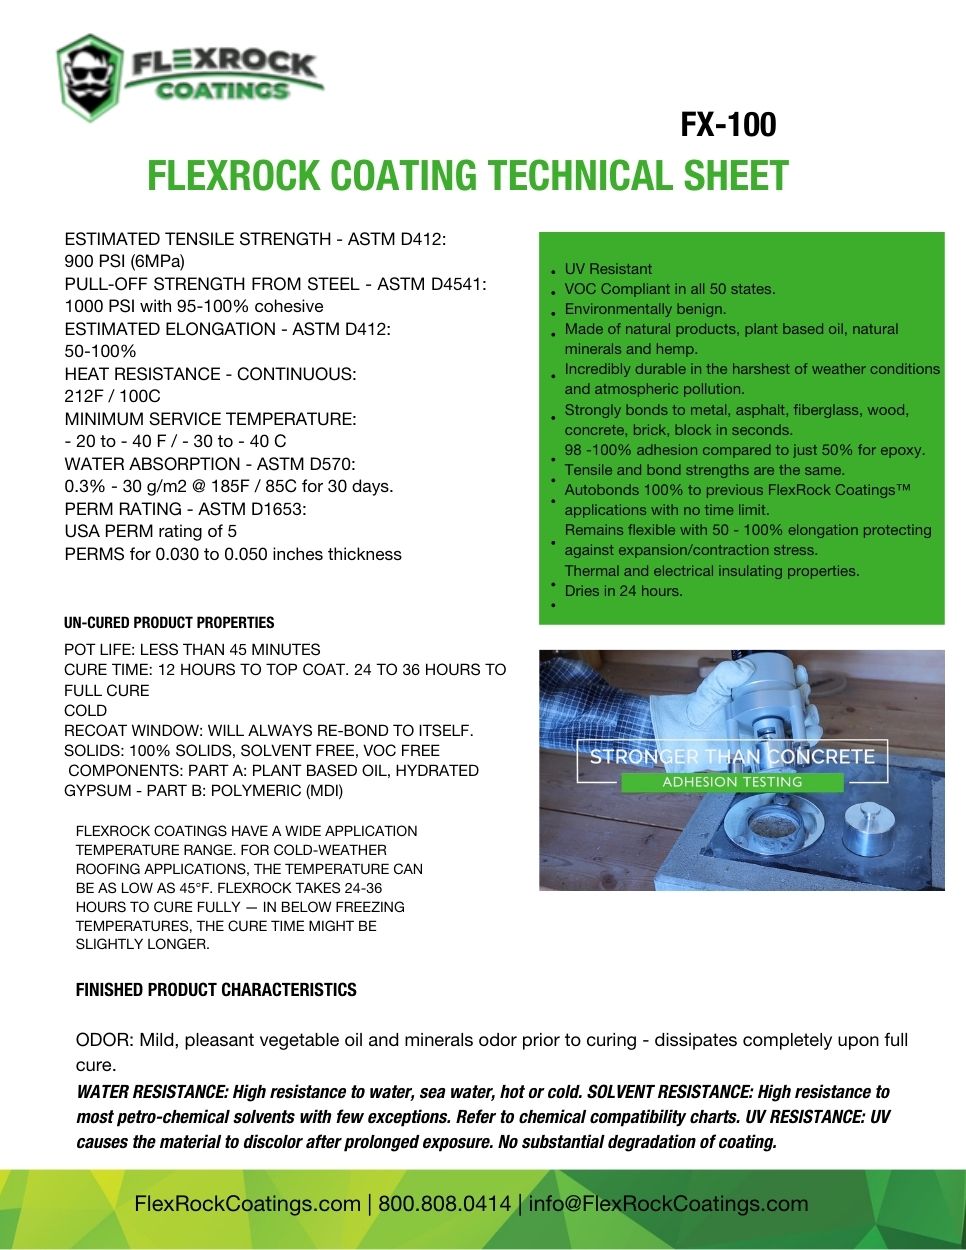 FlexRockTechicalSheet